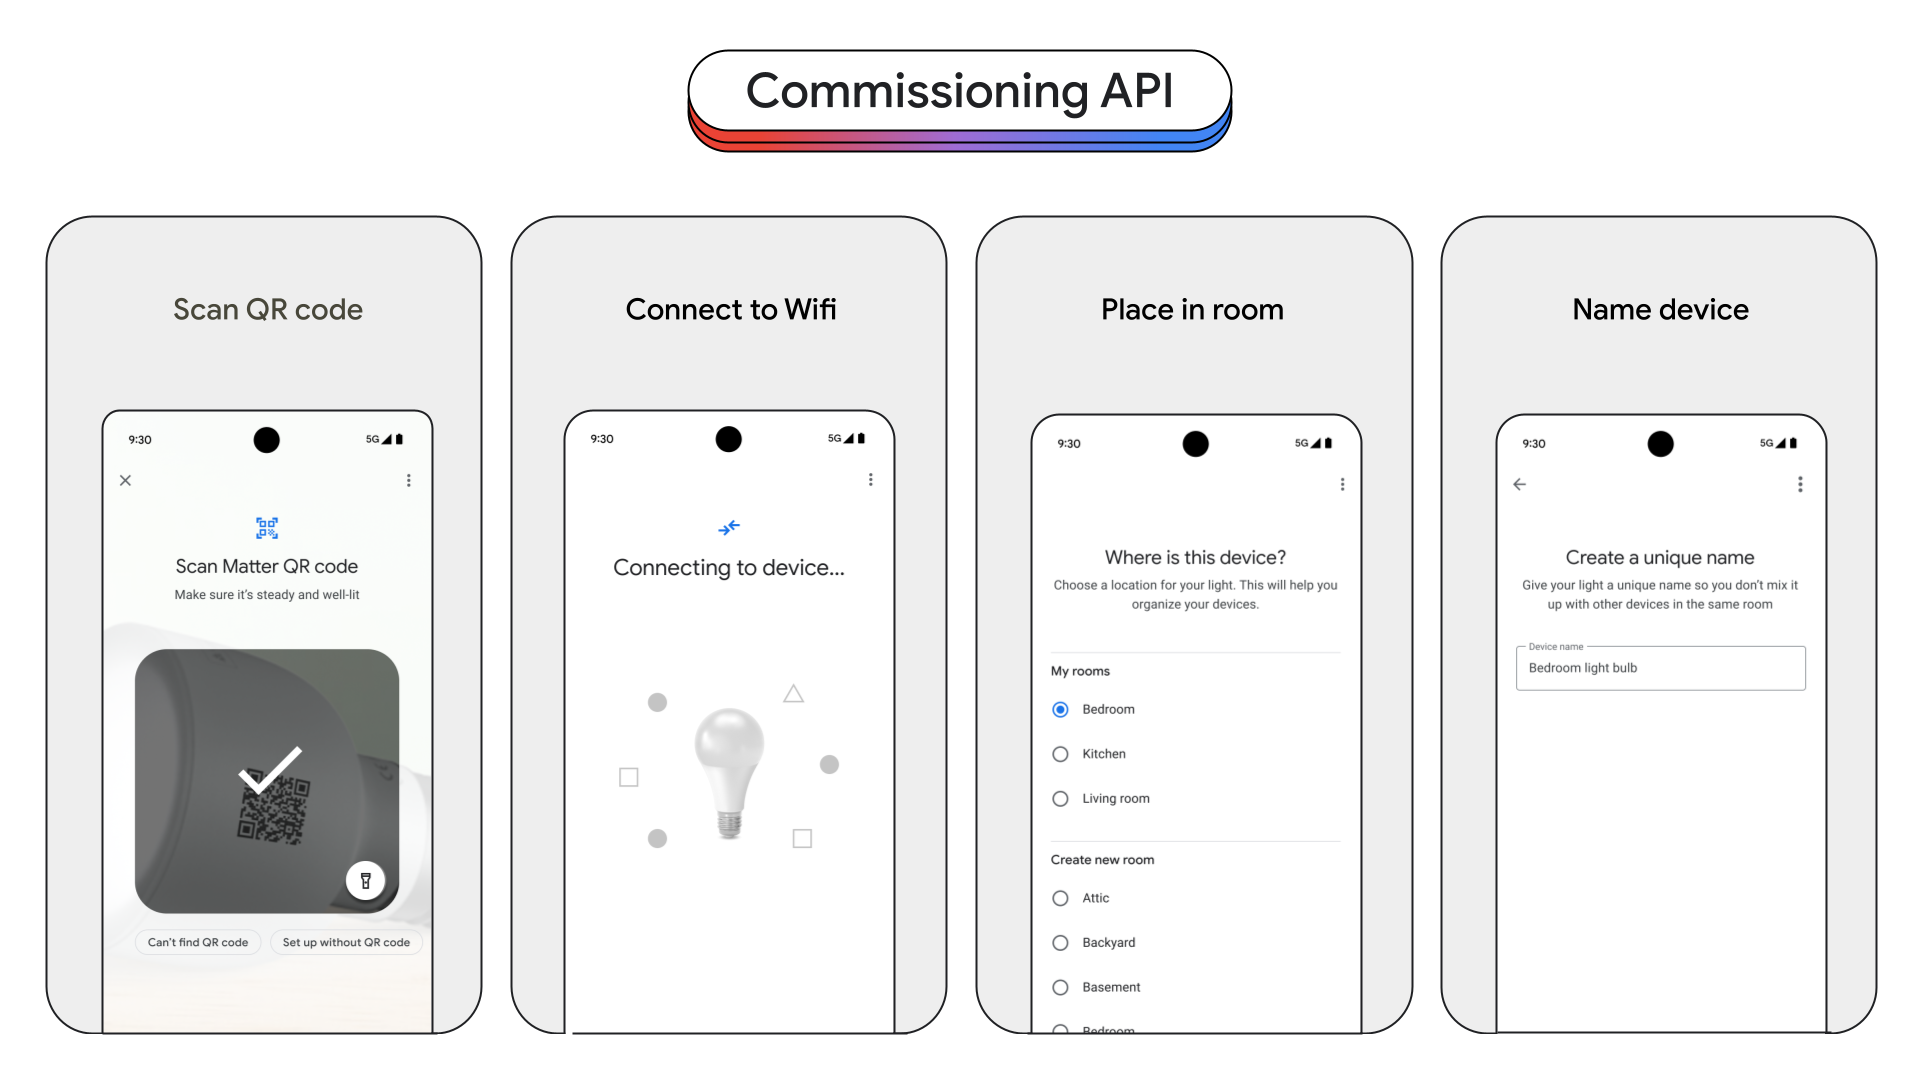 The Commissioning API